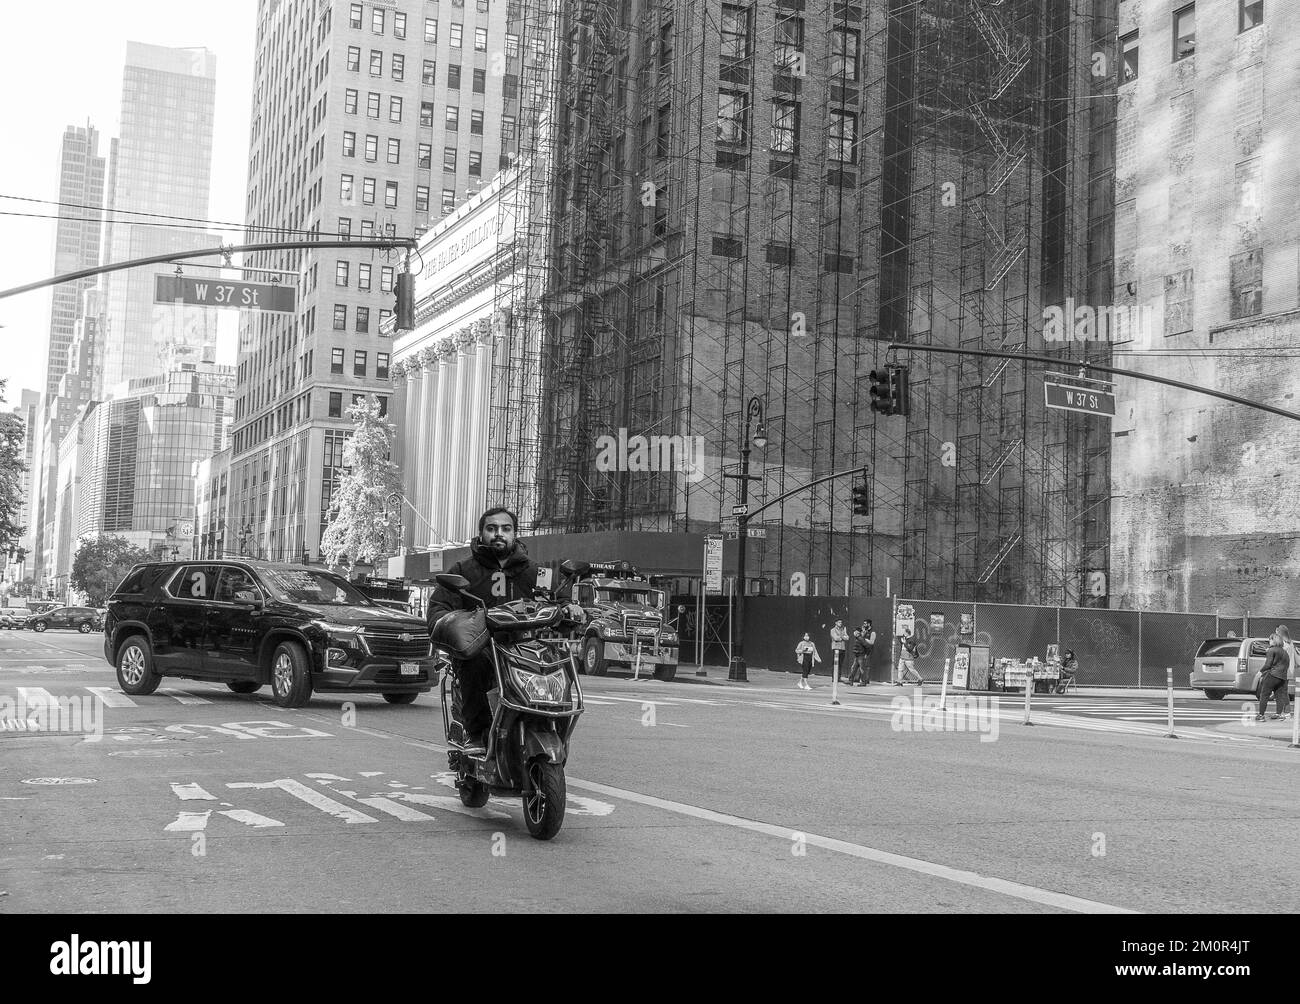 Ein asiatischer Mann fährt seinen Roller auf den Straßen von New York City mit den Wolkenkratzern von Manhattan im Hintergrund. Schwarz-weiße Straßenfotografie Stockfoto